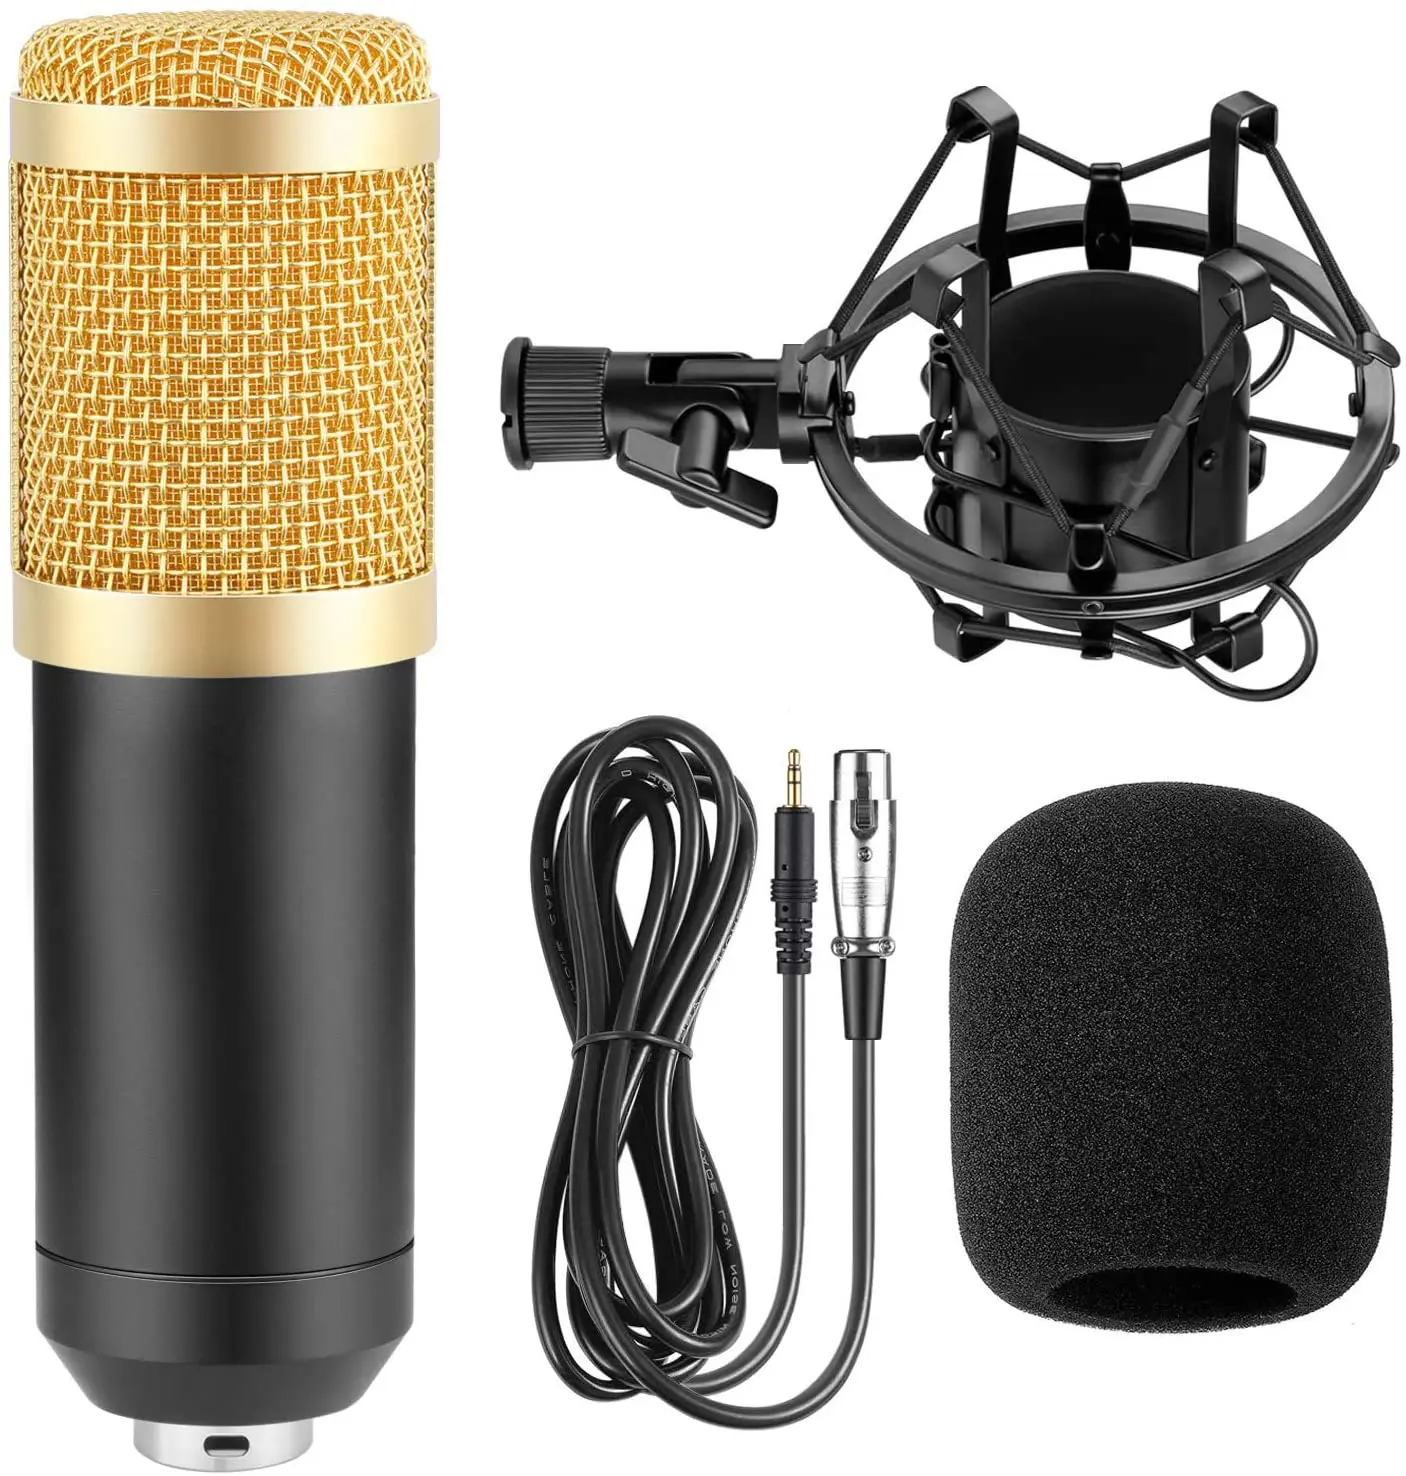 
BM800 bm 800 Studio Condenser Microphone Bundle V8 Sound Card set for webcast live Studio Recording Singing Broadcasting bm-800 